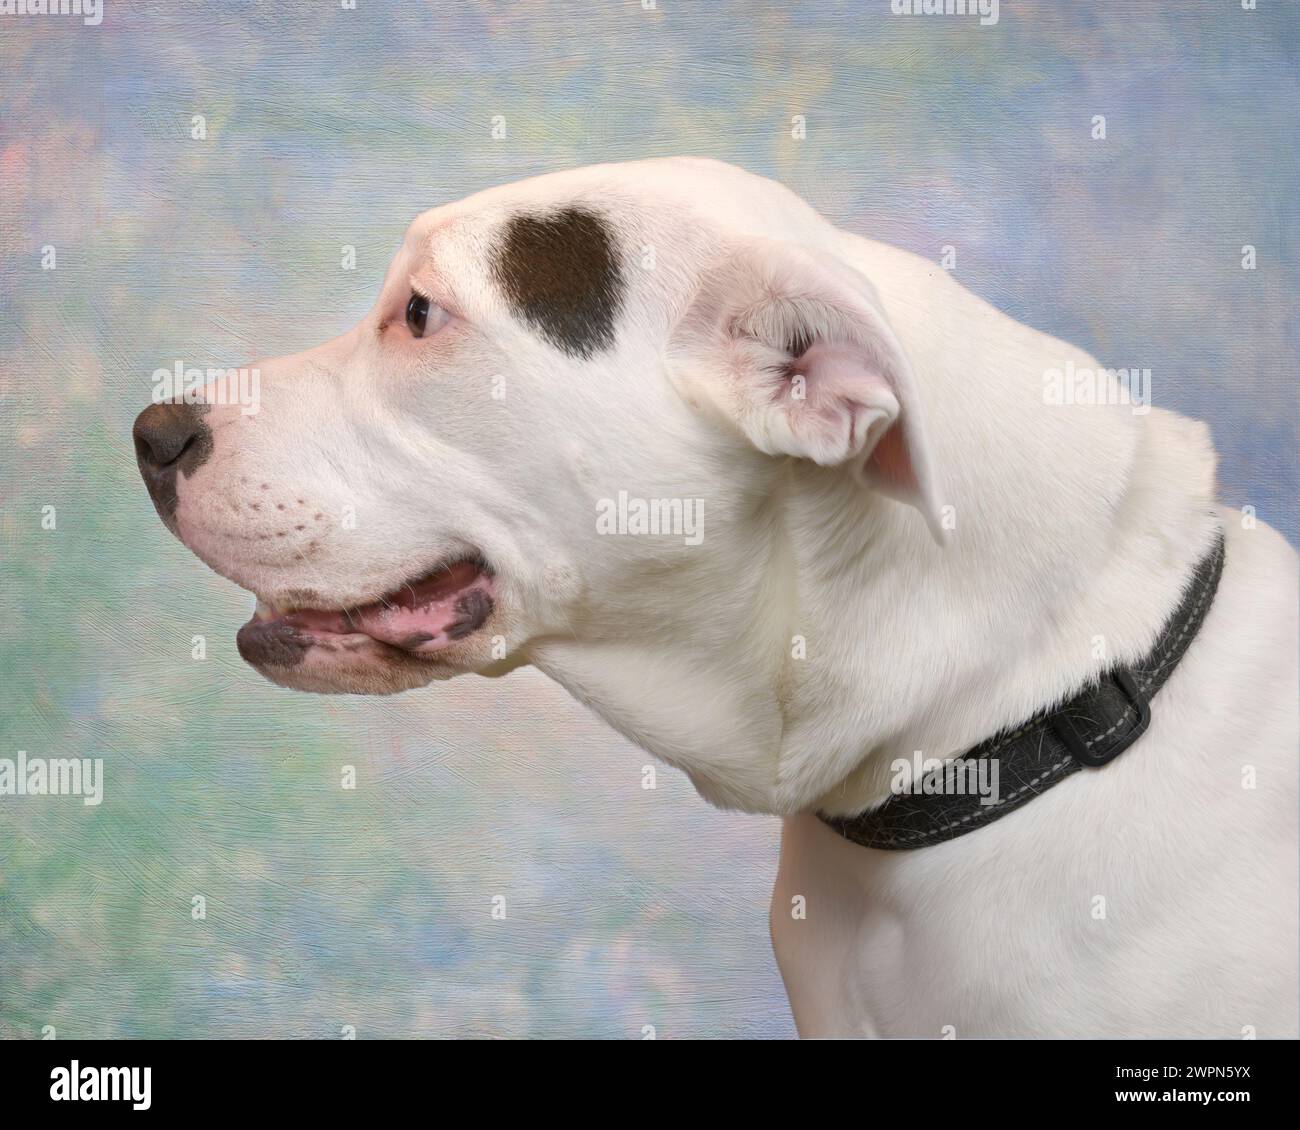 Horizontale Seitenansicht eines wunderschönen ausgewachsenen Hundes mit einer gemischten Rasse, der die herzartige Form an der Seite seines Kopfes zeigt. Der Schuss ist von den Schultern hoch. Stockfoto